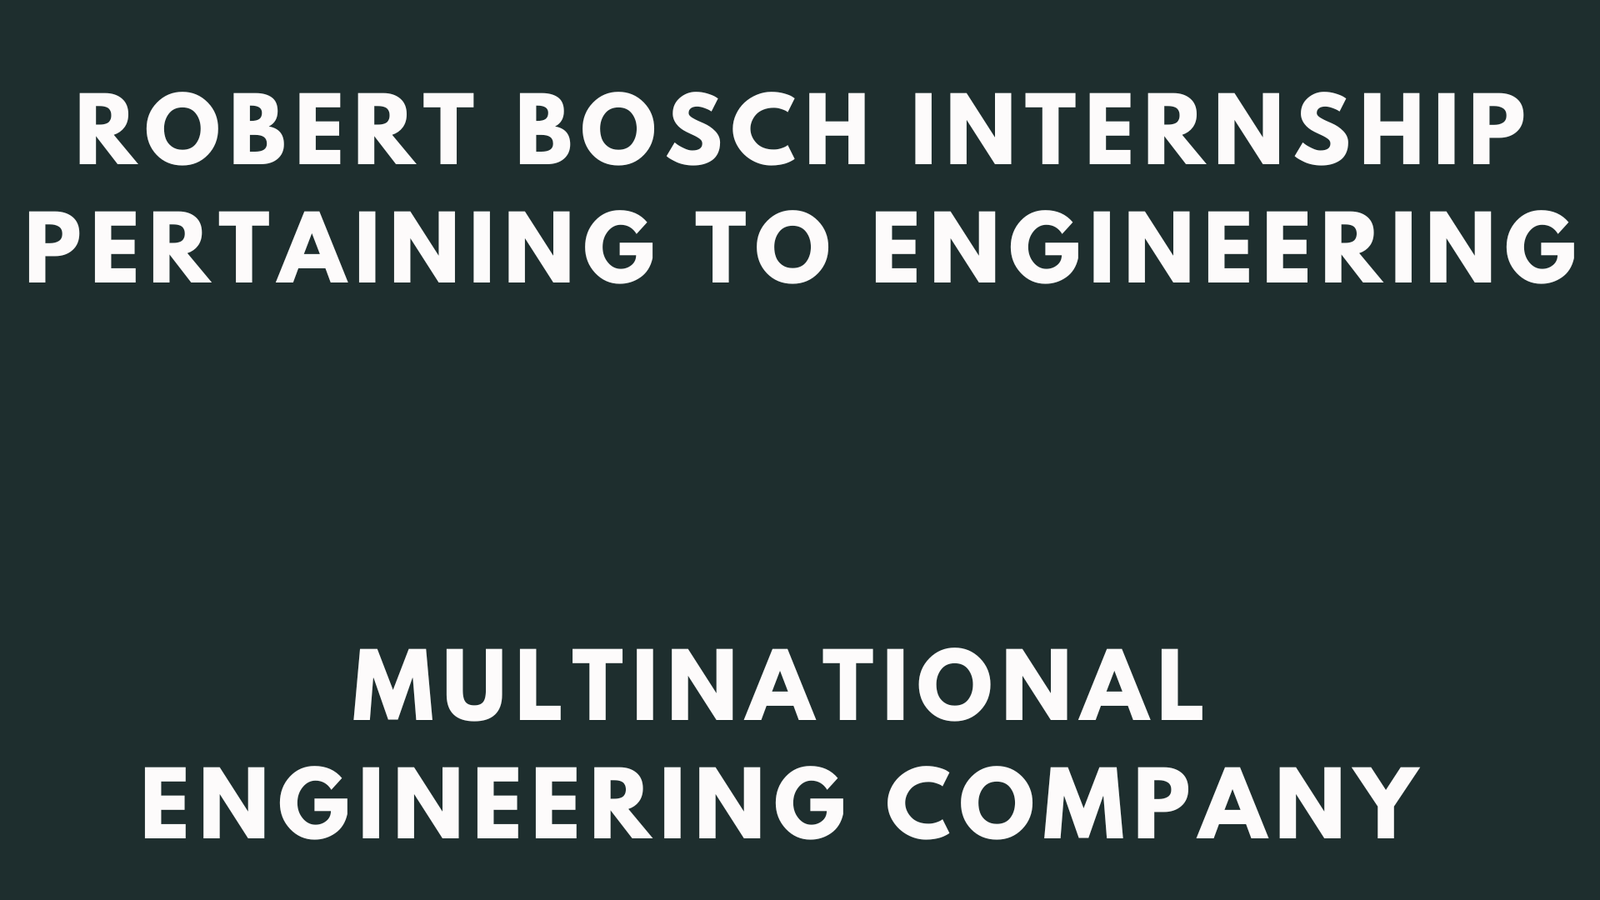 Robert Bosch Internship